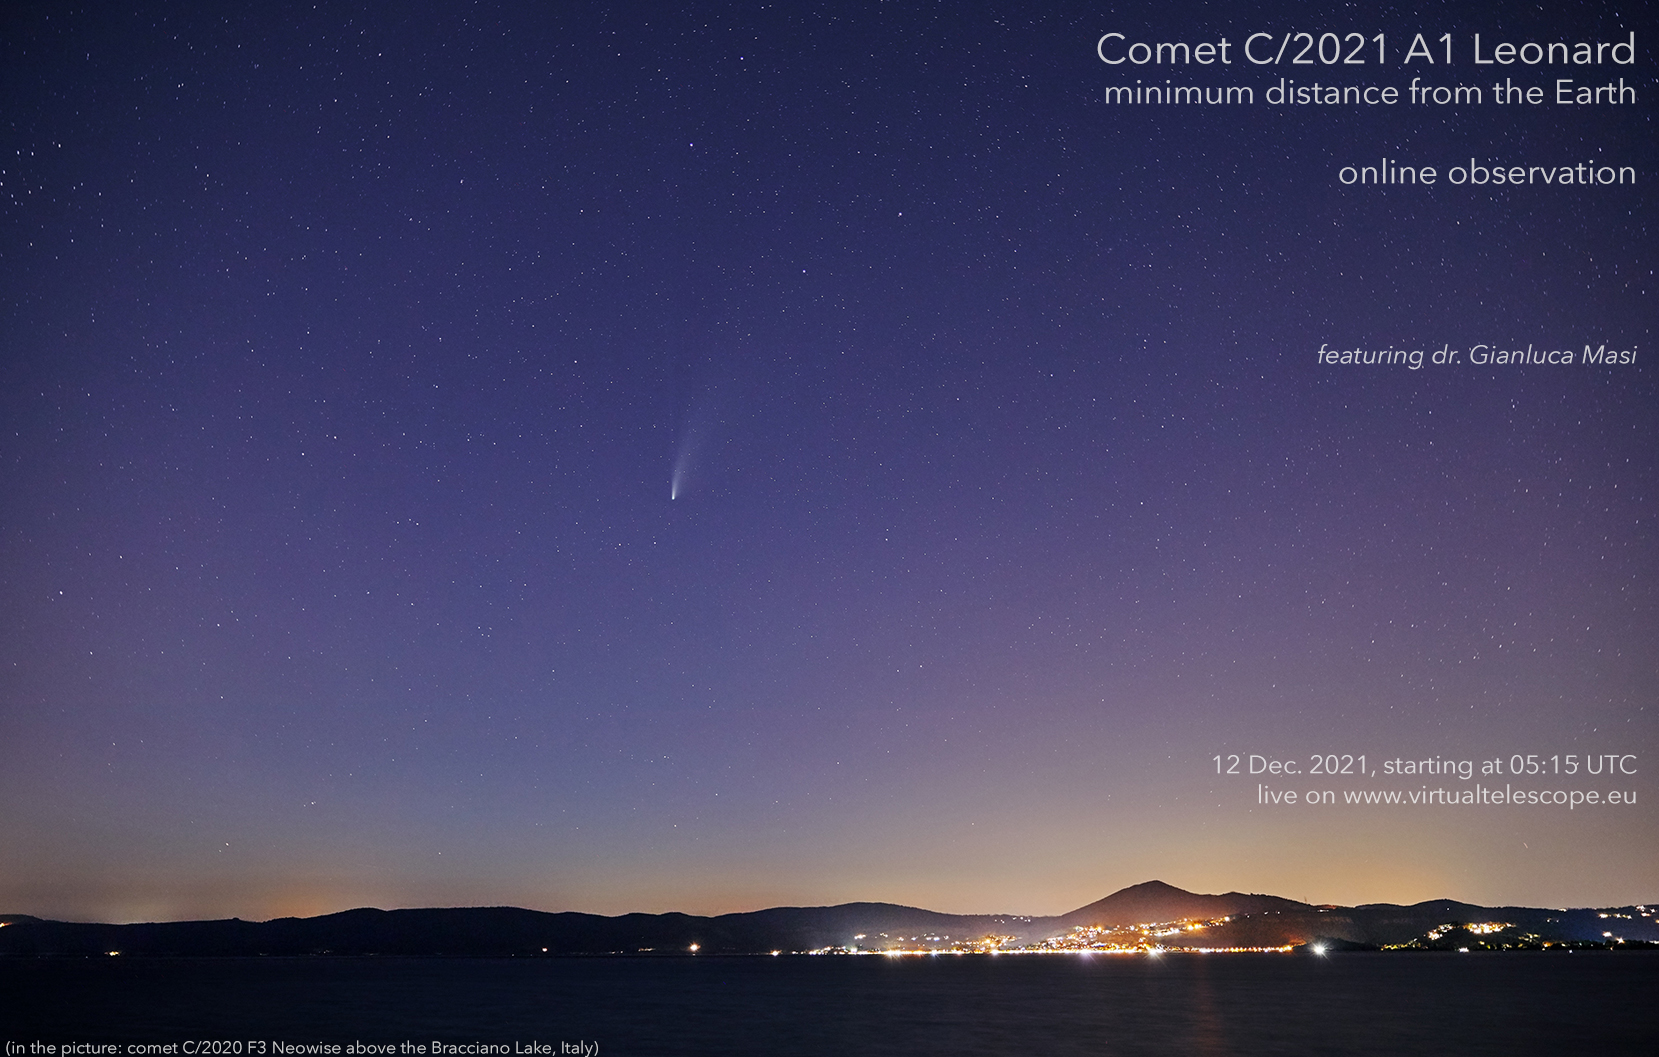 Comet C/2021 A1 Leonard: poster of the 12 Dec. 2021 event.